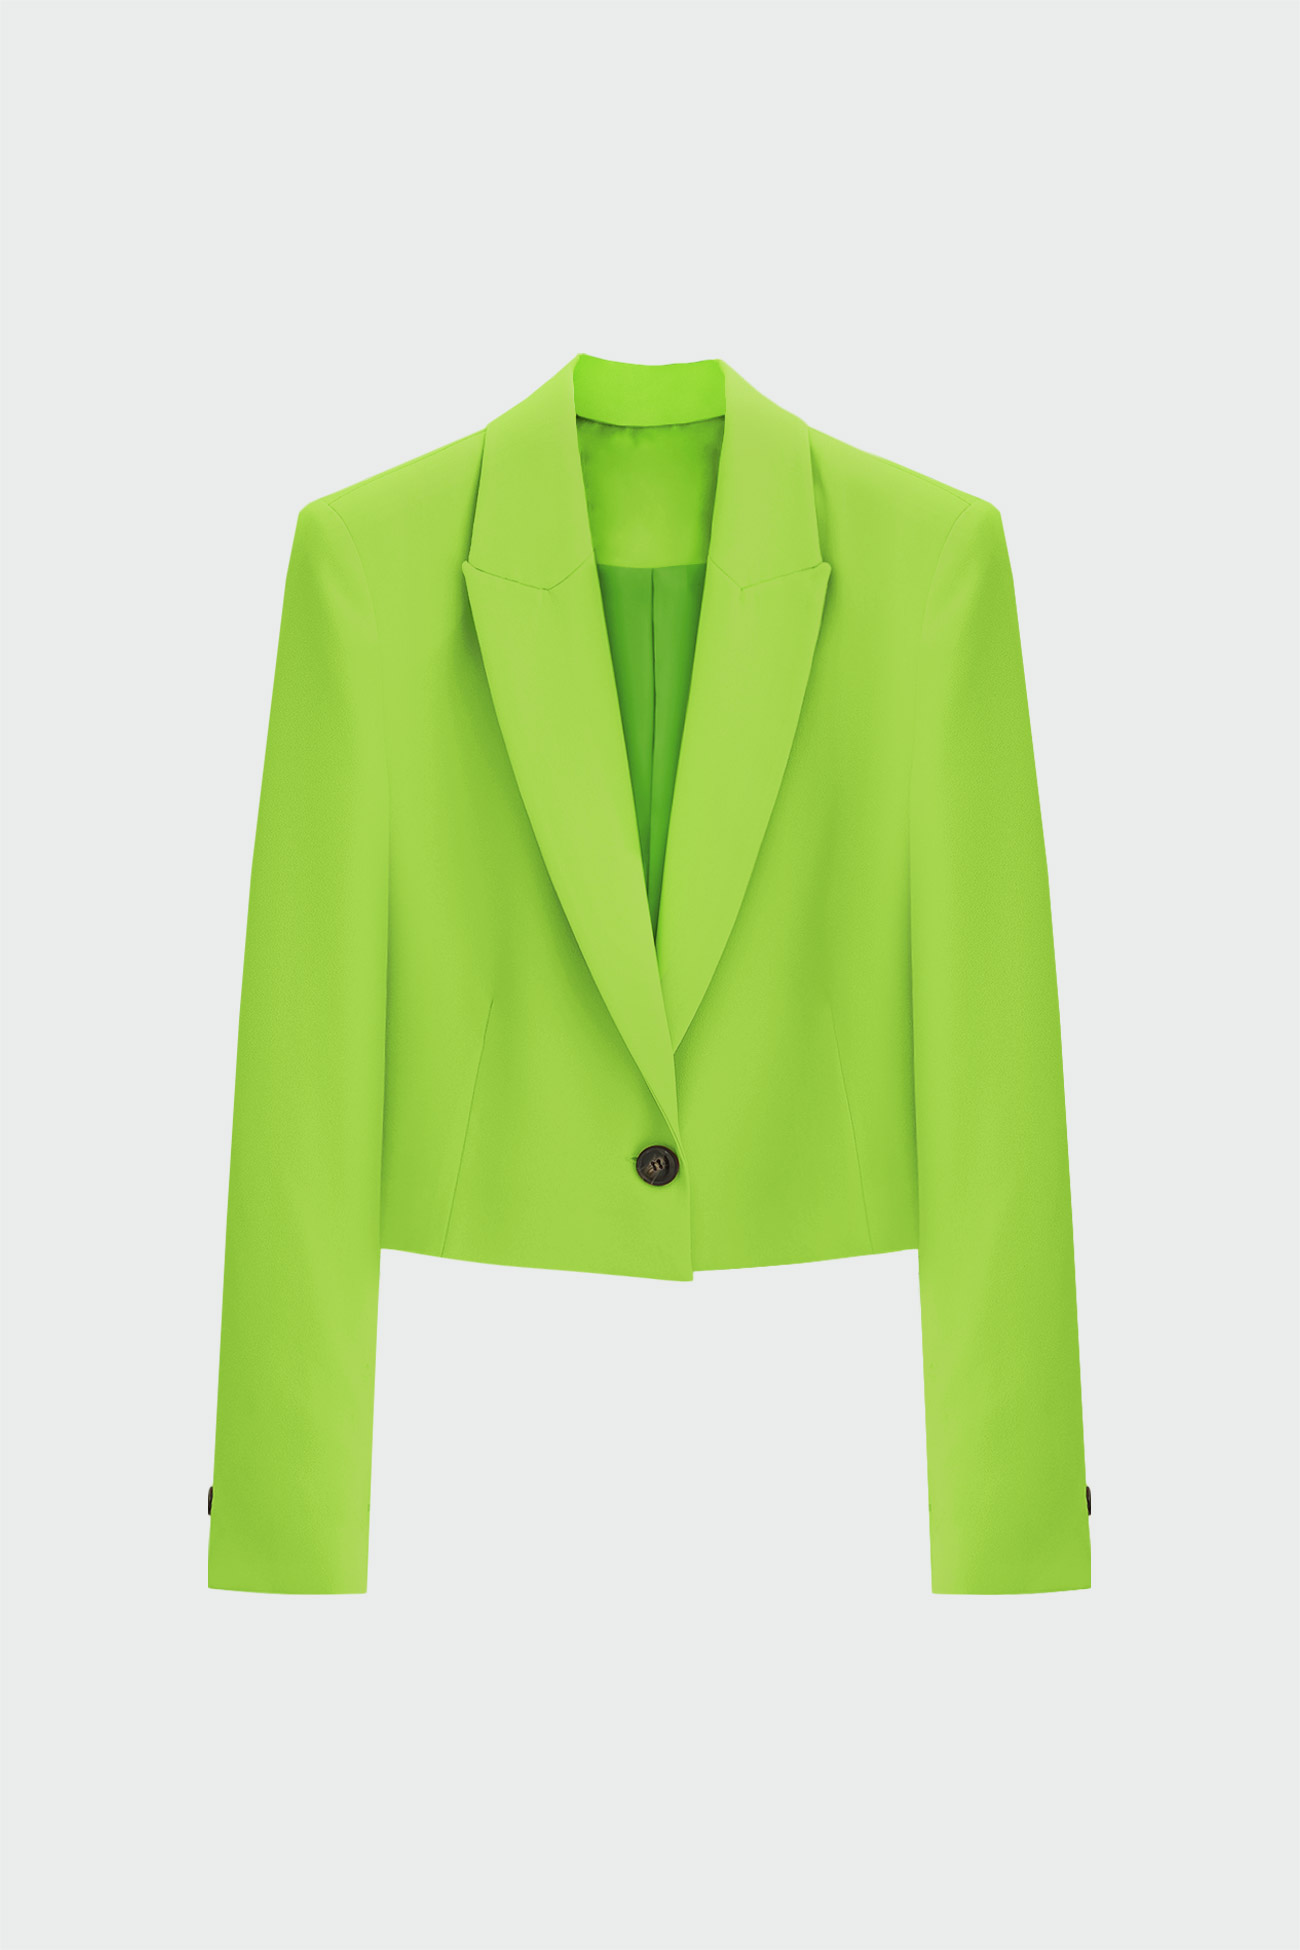 Tek Düğmeli Dökümlü Kısa Fıstık Yeşili Kadın Ceket